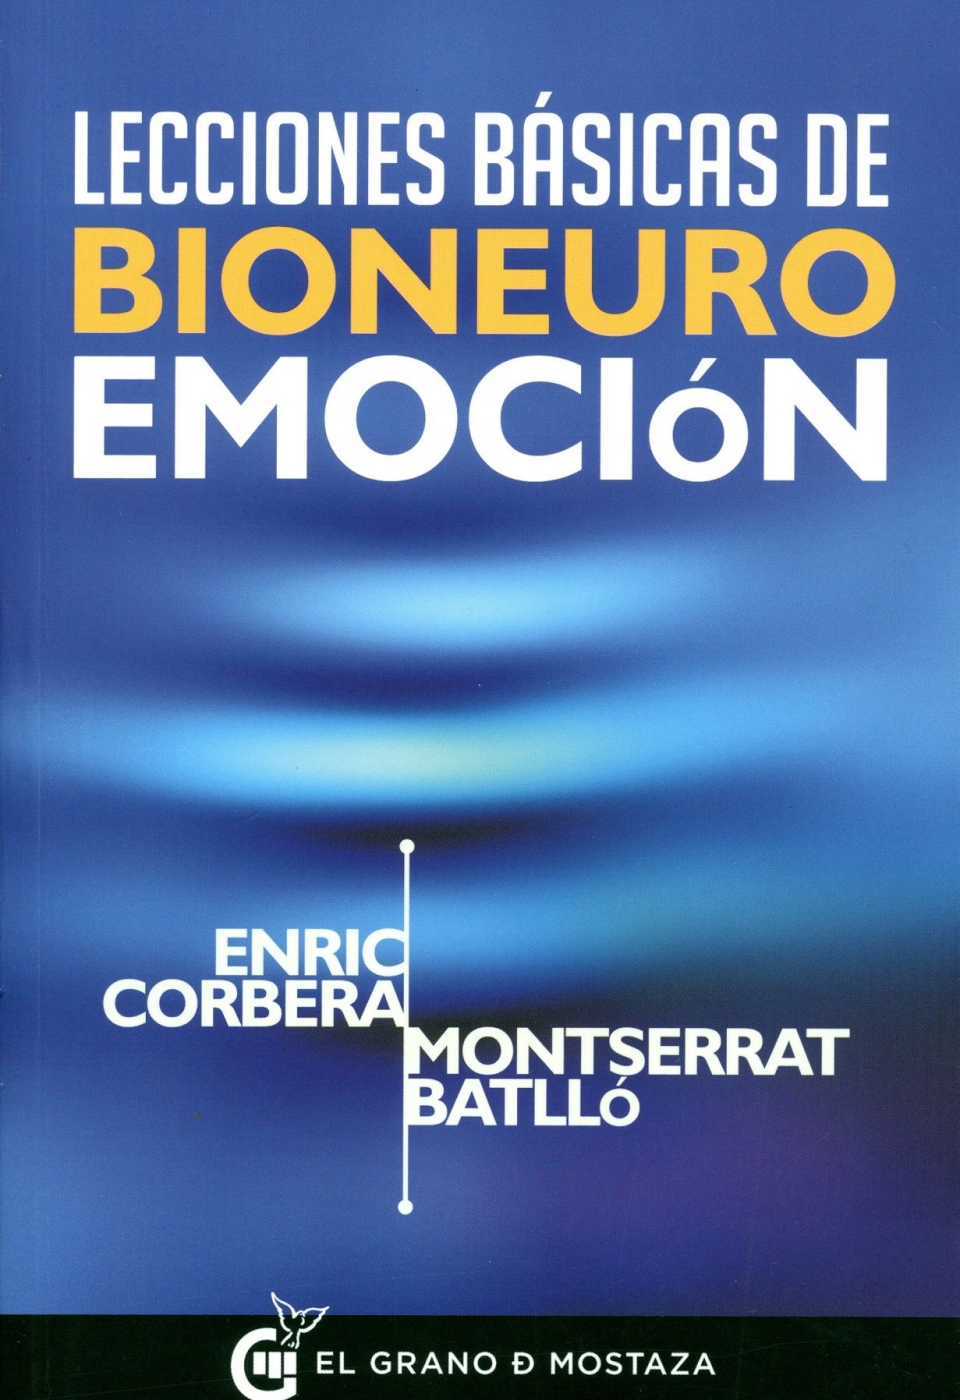 Libro:   “Bioneuroemoción – Cómo gestionar nuestras relaciones”